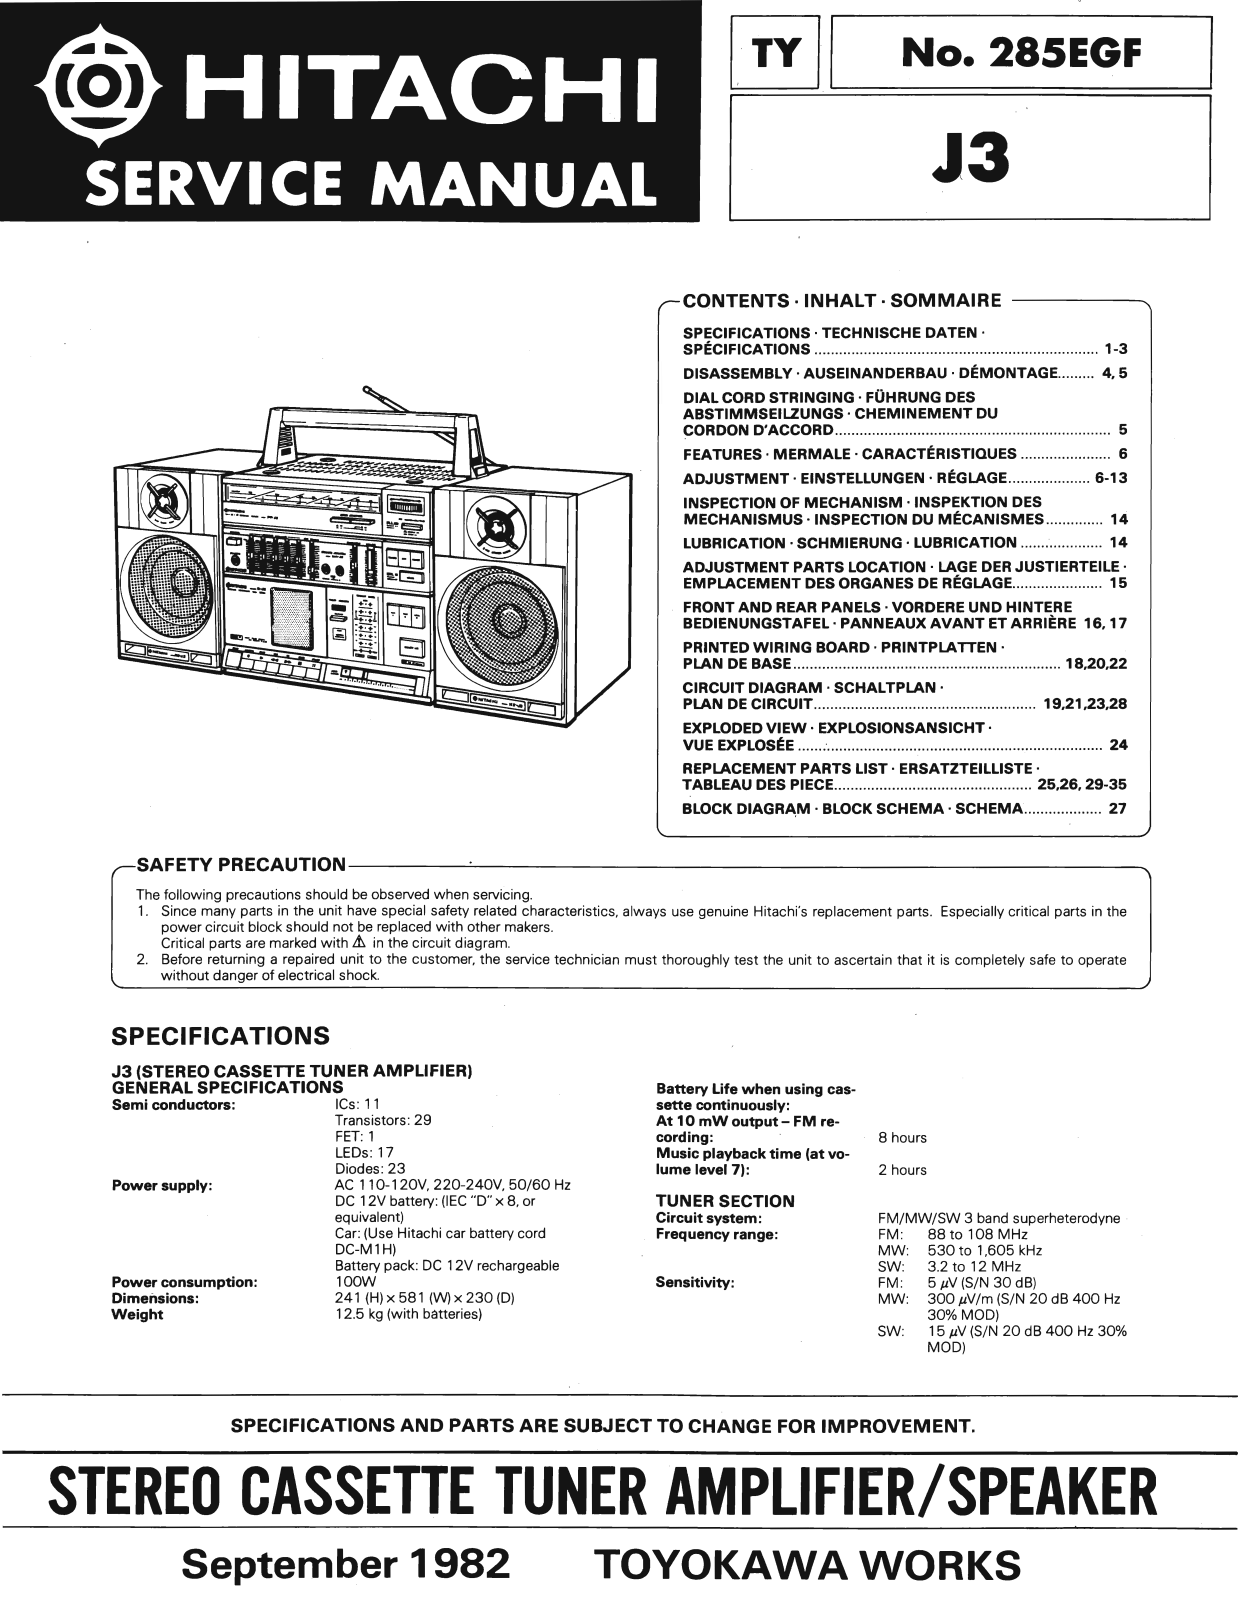 Hitachi J-3 Service Manual